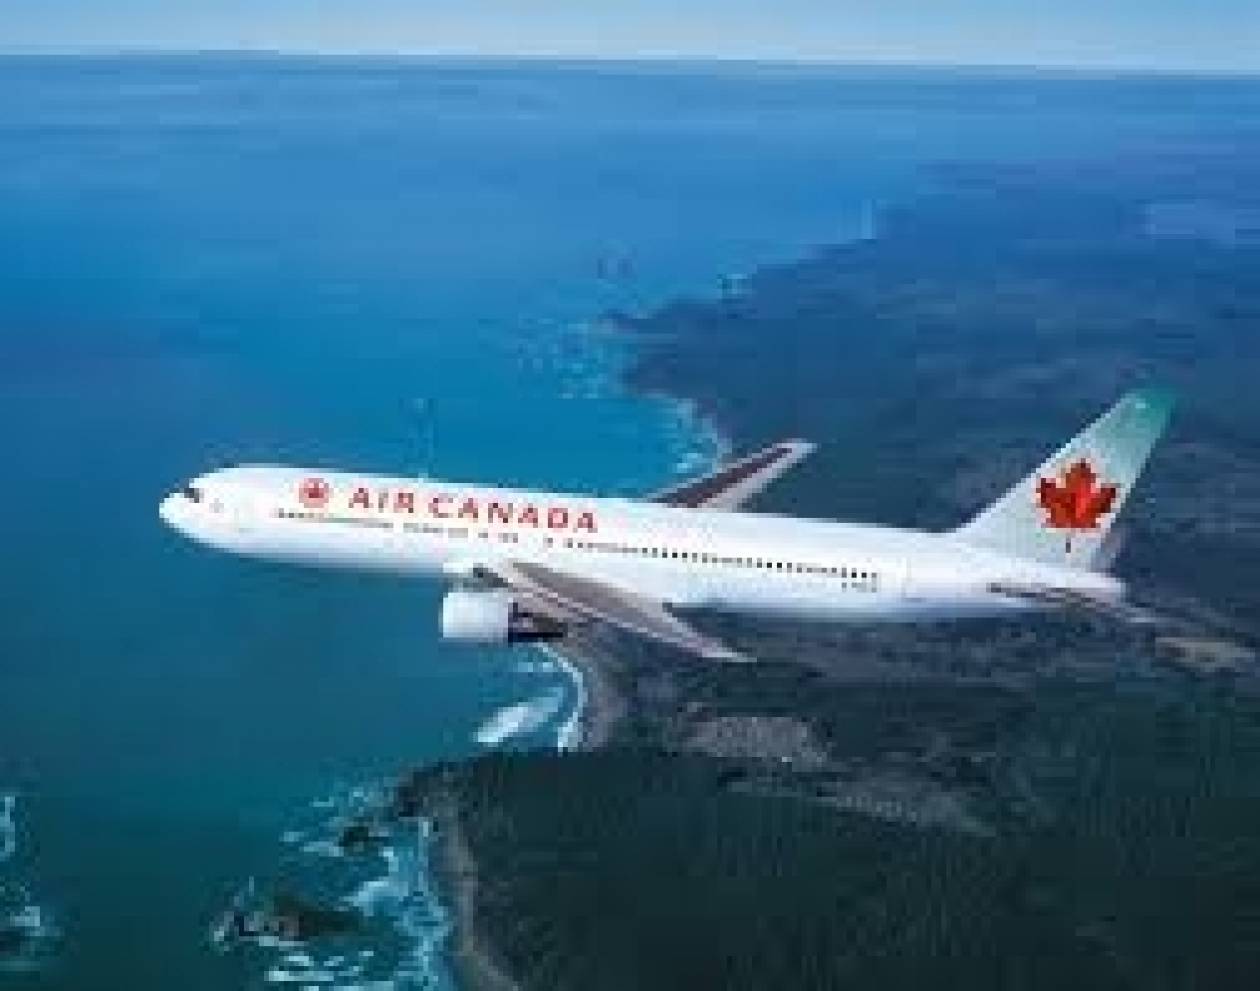 Αναστολή των πτήσεων της Air Canada από και προς τη Βενεζουέλα